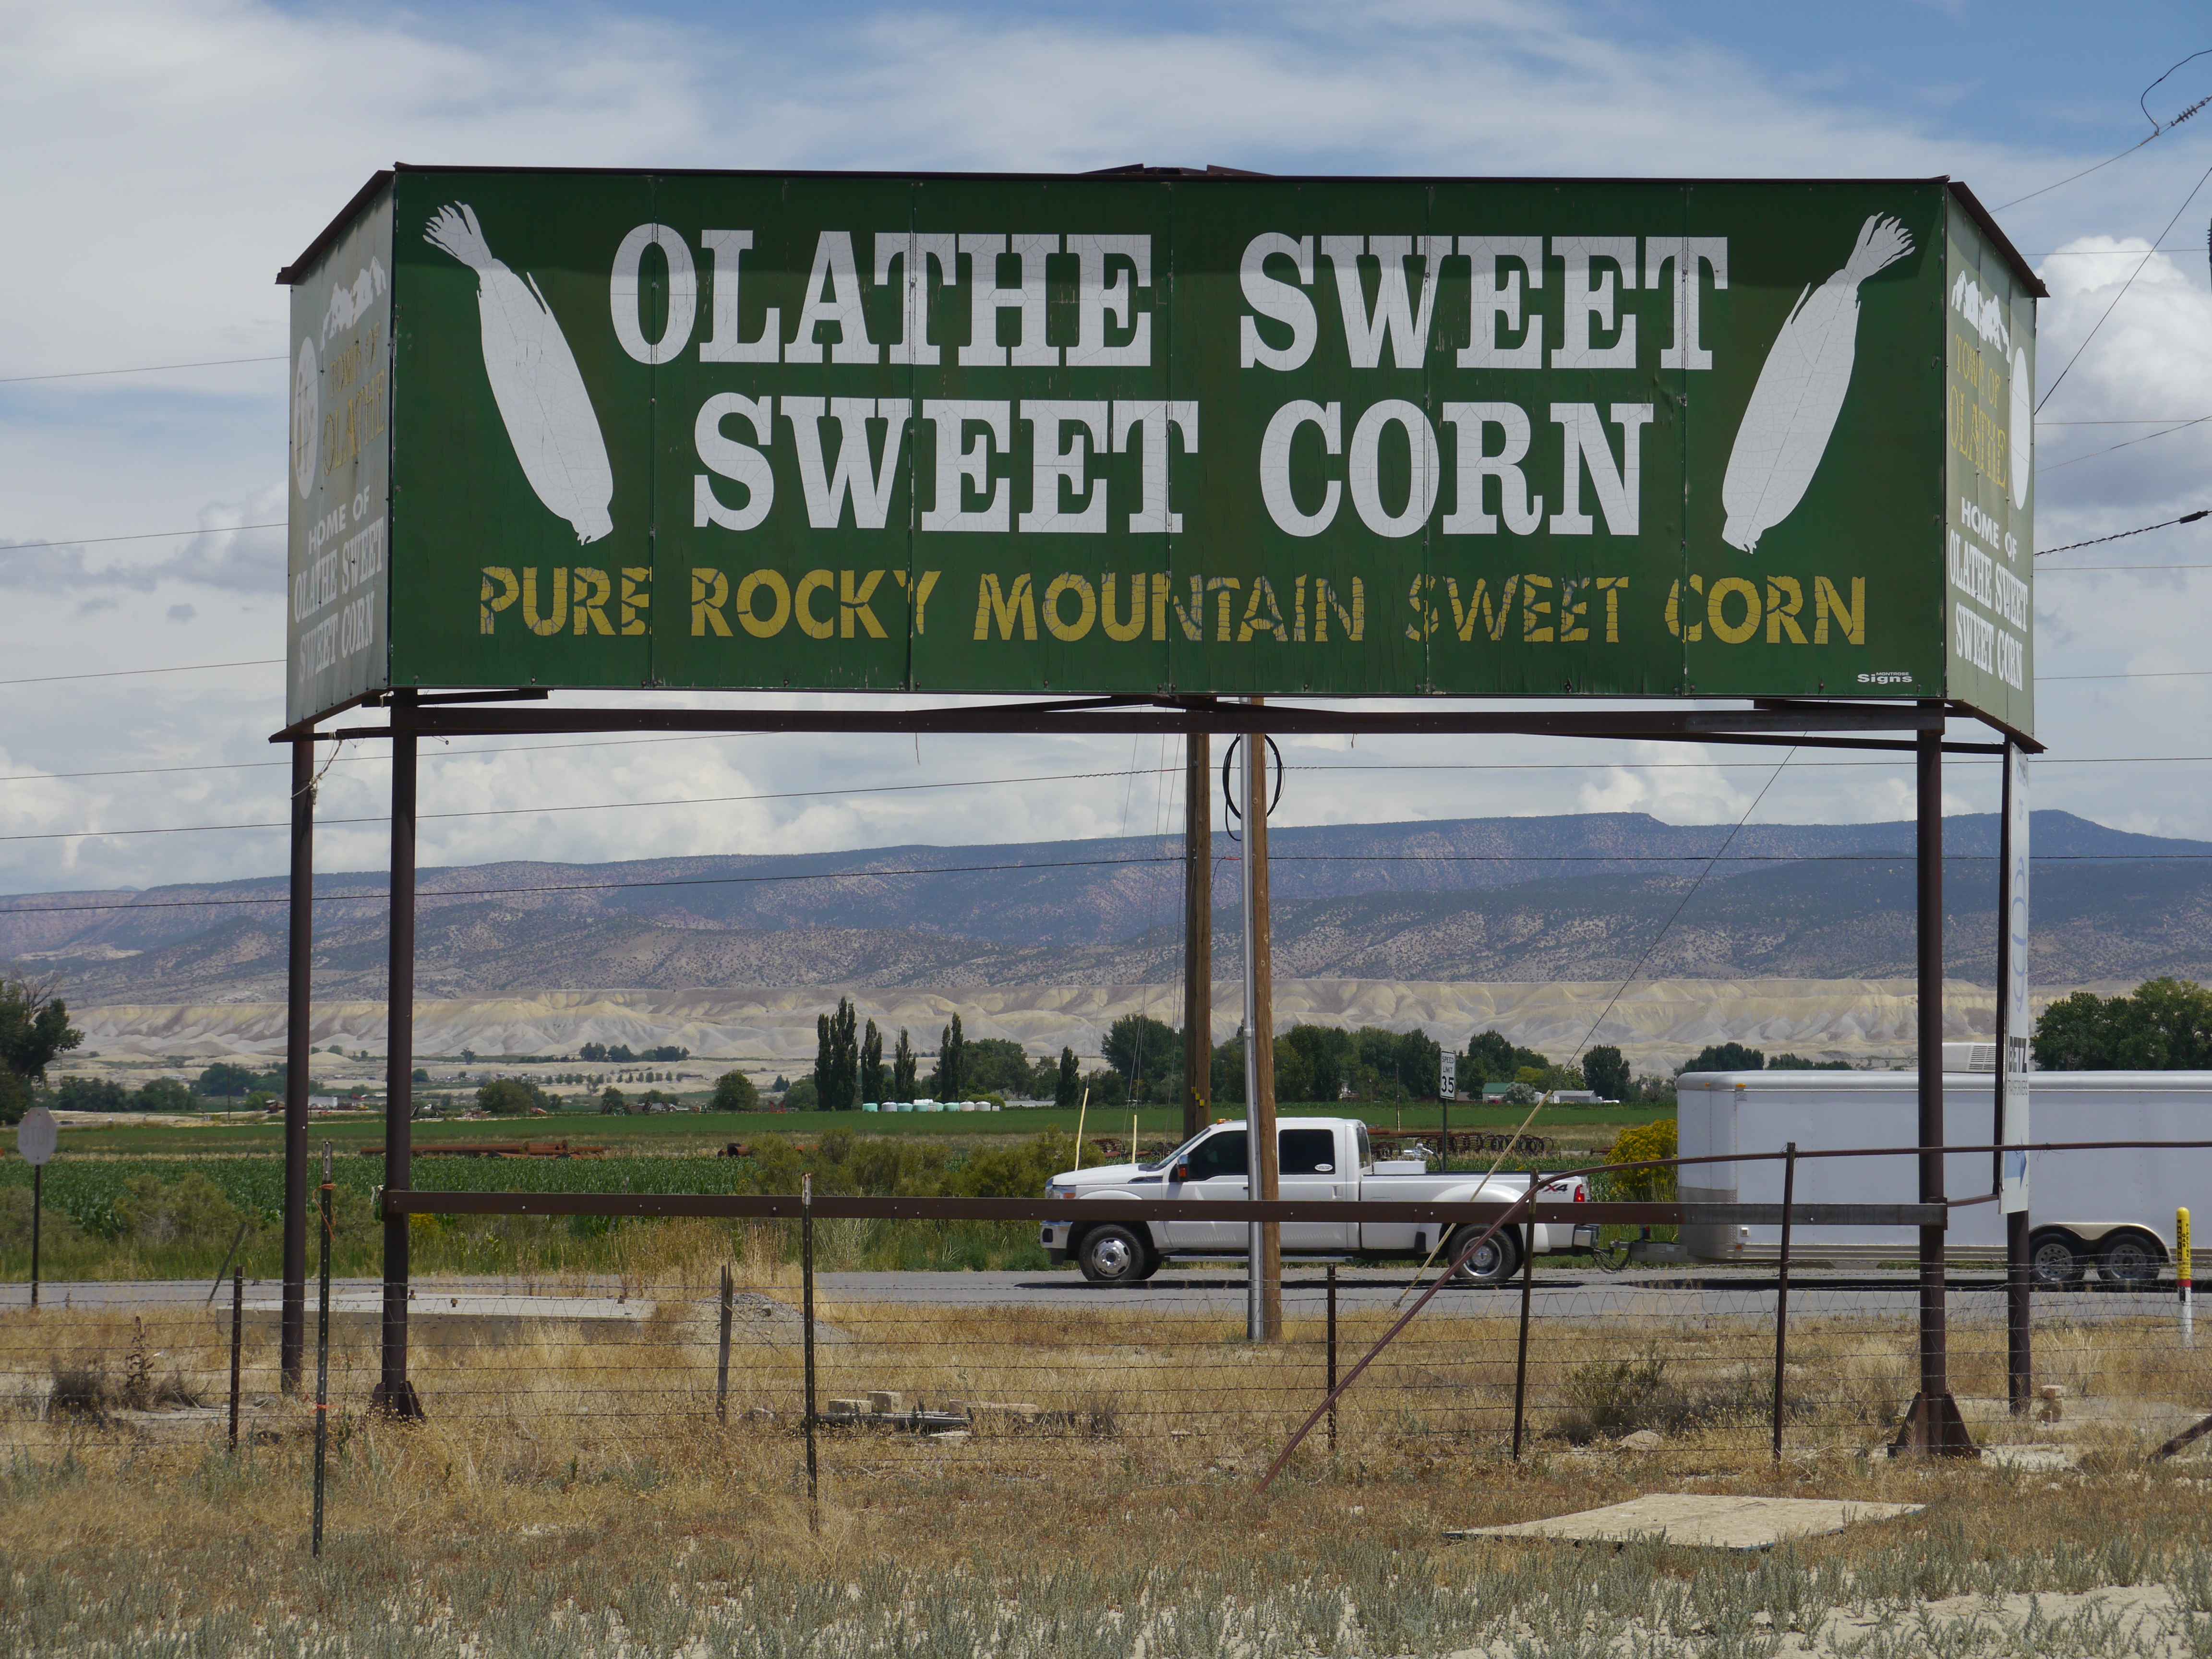 A billboard for David Harold’s family farm in Colorado, Olathe Sweet Sweet Corn. (Lucas Isakowitz)